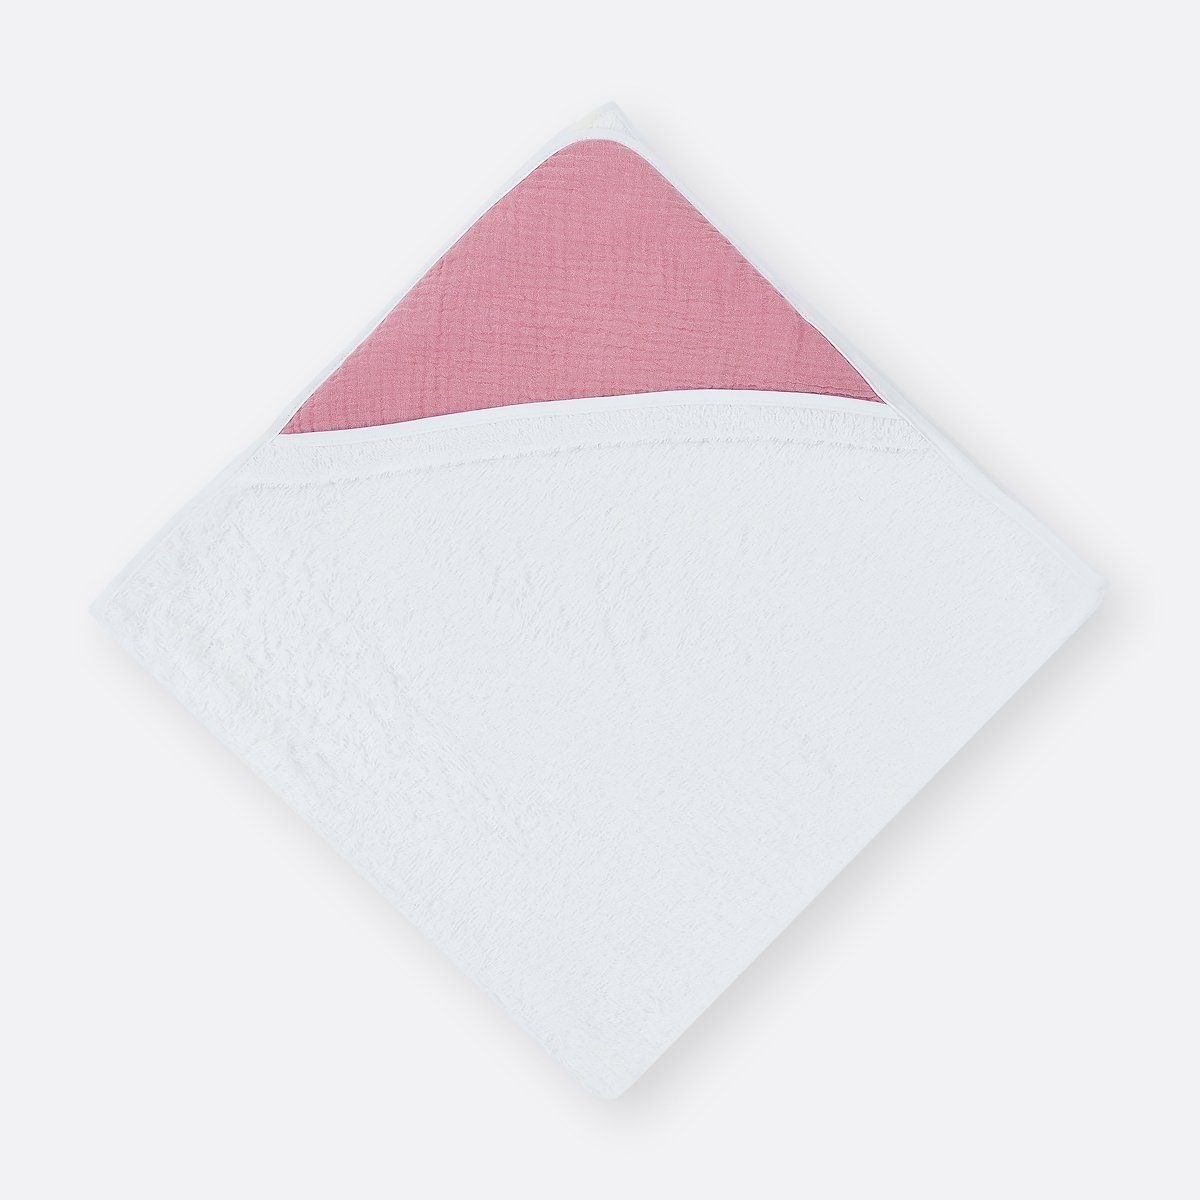 KraftKids Kapuzenhandtuch Musselin rosa, 100% Baumwolle, extra dickes und weiches Frottee, eingefasst mit Schrägband